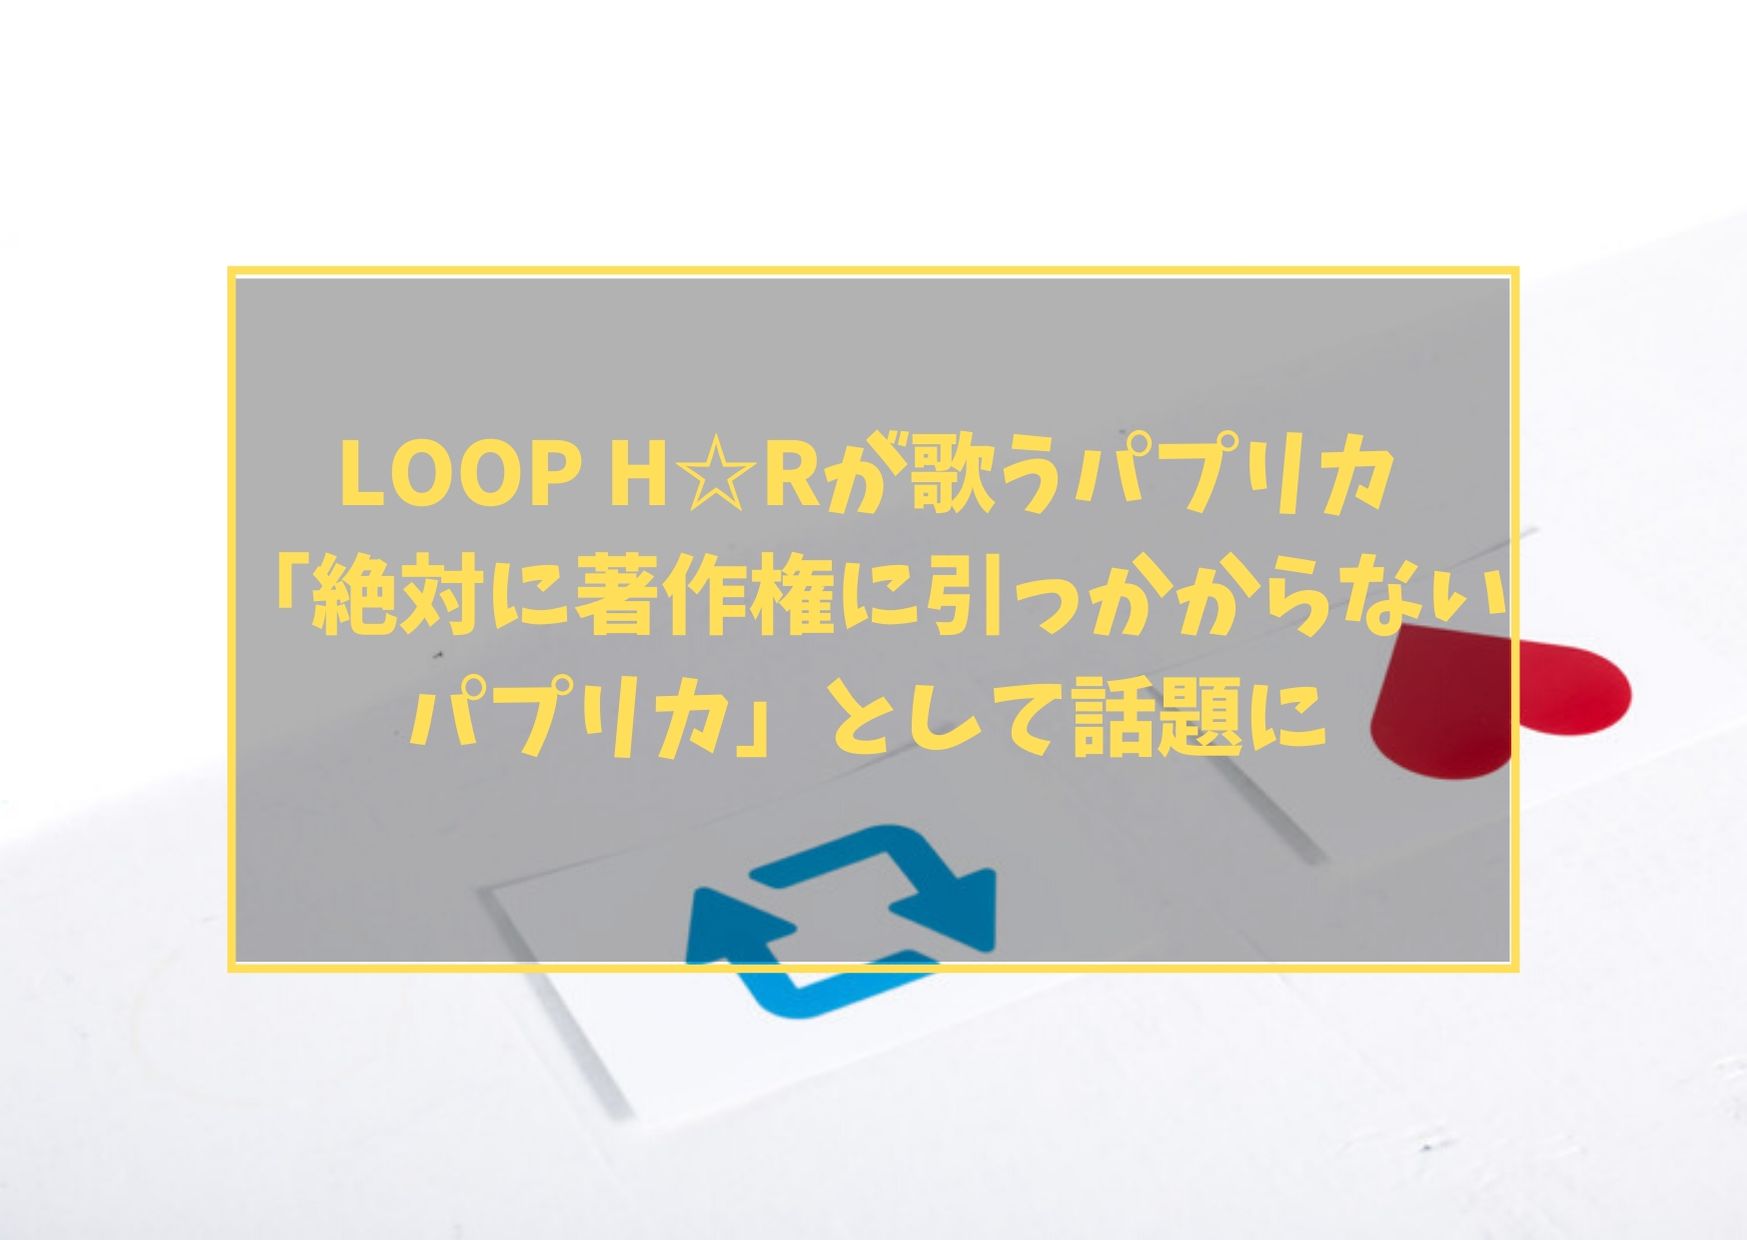 LOOP H☆Rが歌うパプリカ「絶対に著作権に引っかからないパプリカ」として話題に